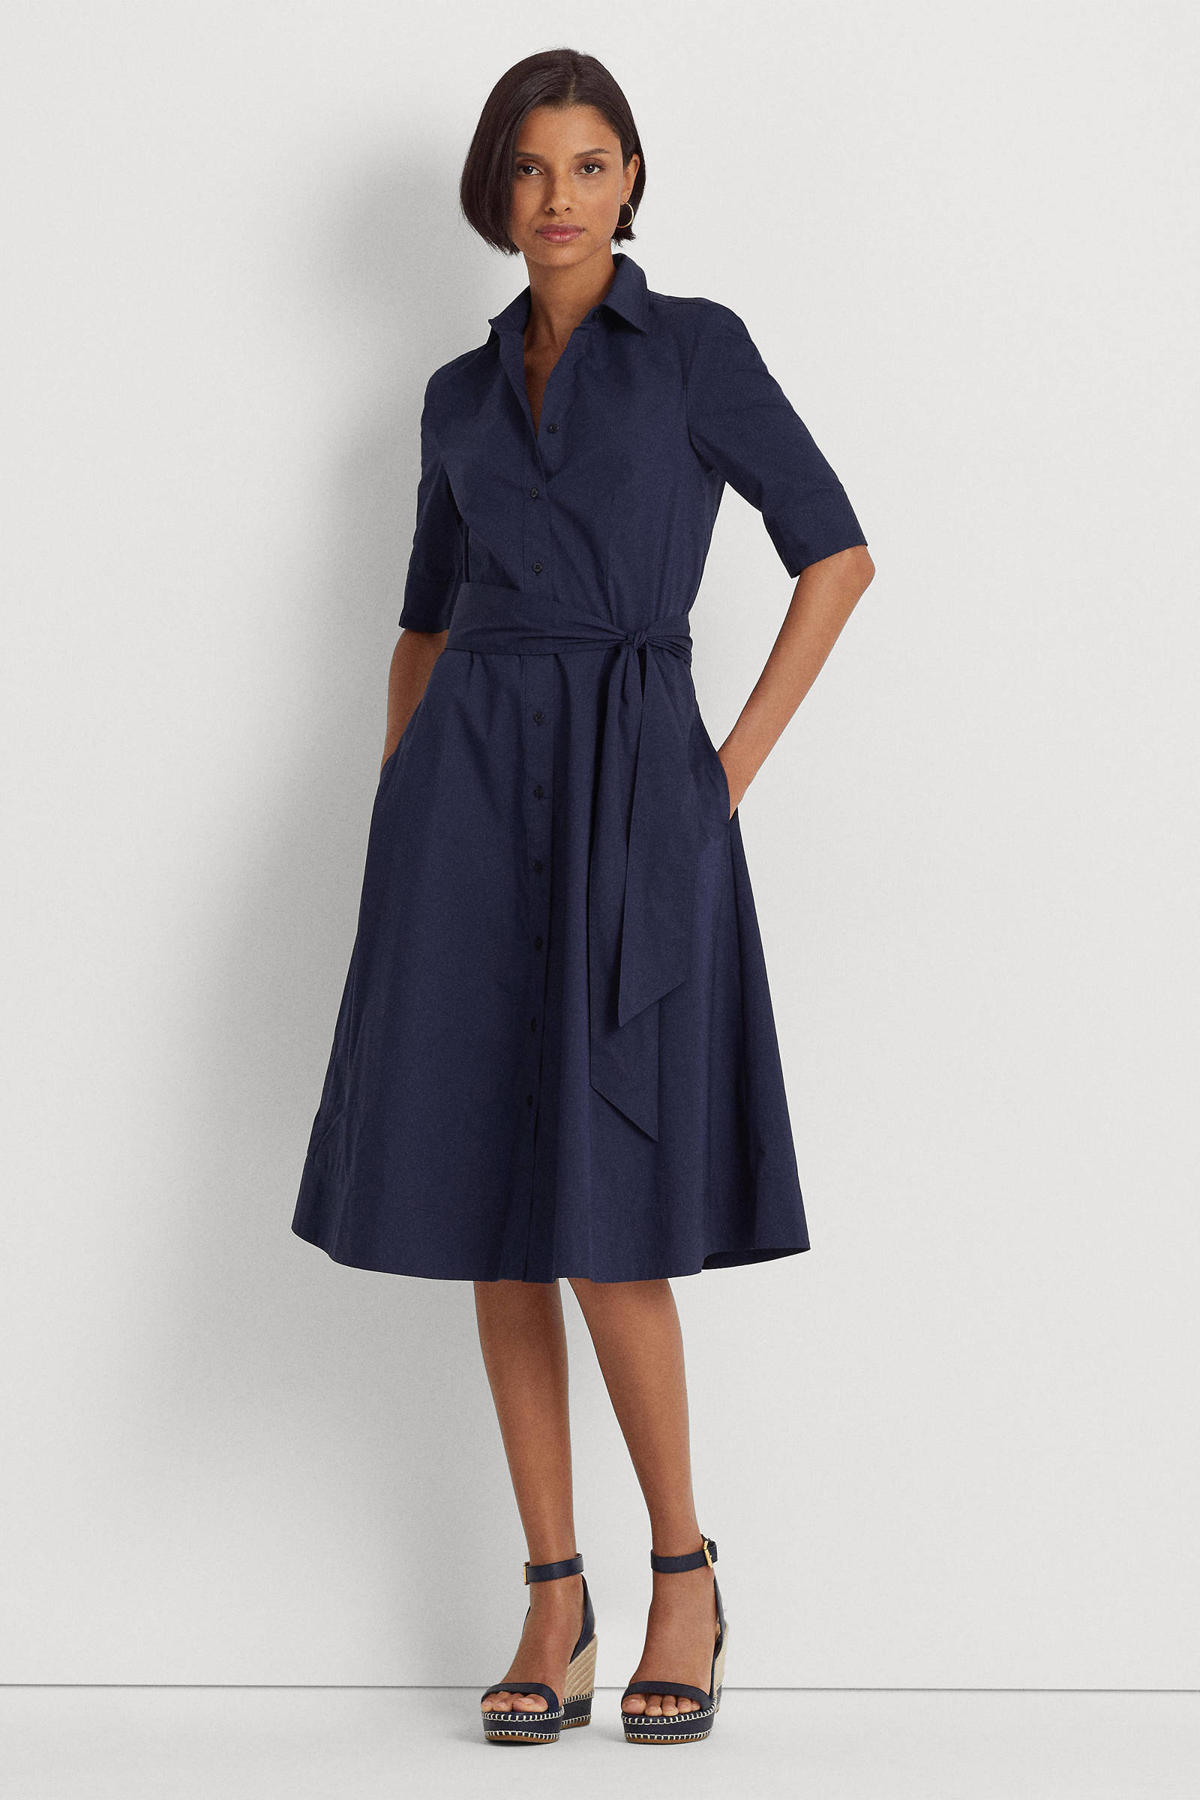 Geweldige eik Maak los Ondraaglijk Lauren Ralph Lauren jurk Finnbarr met ceintuur donkerblauw | wehkamp